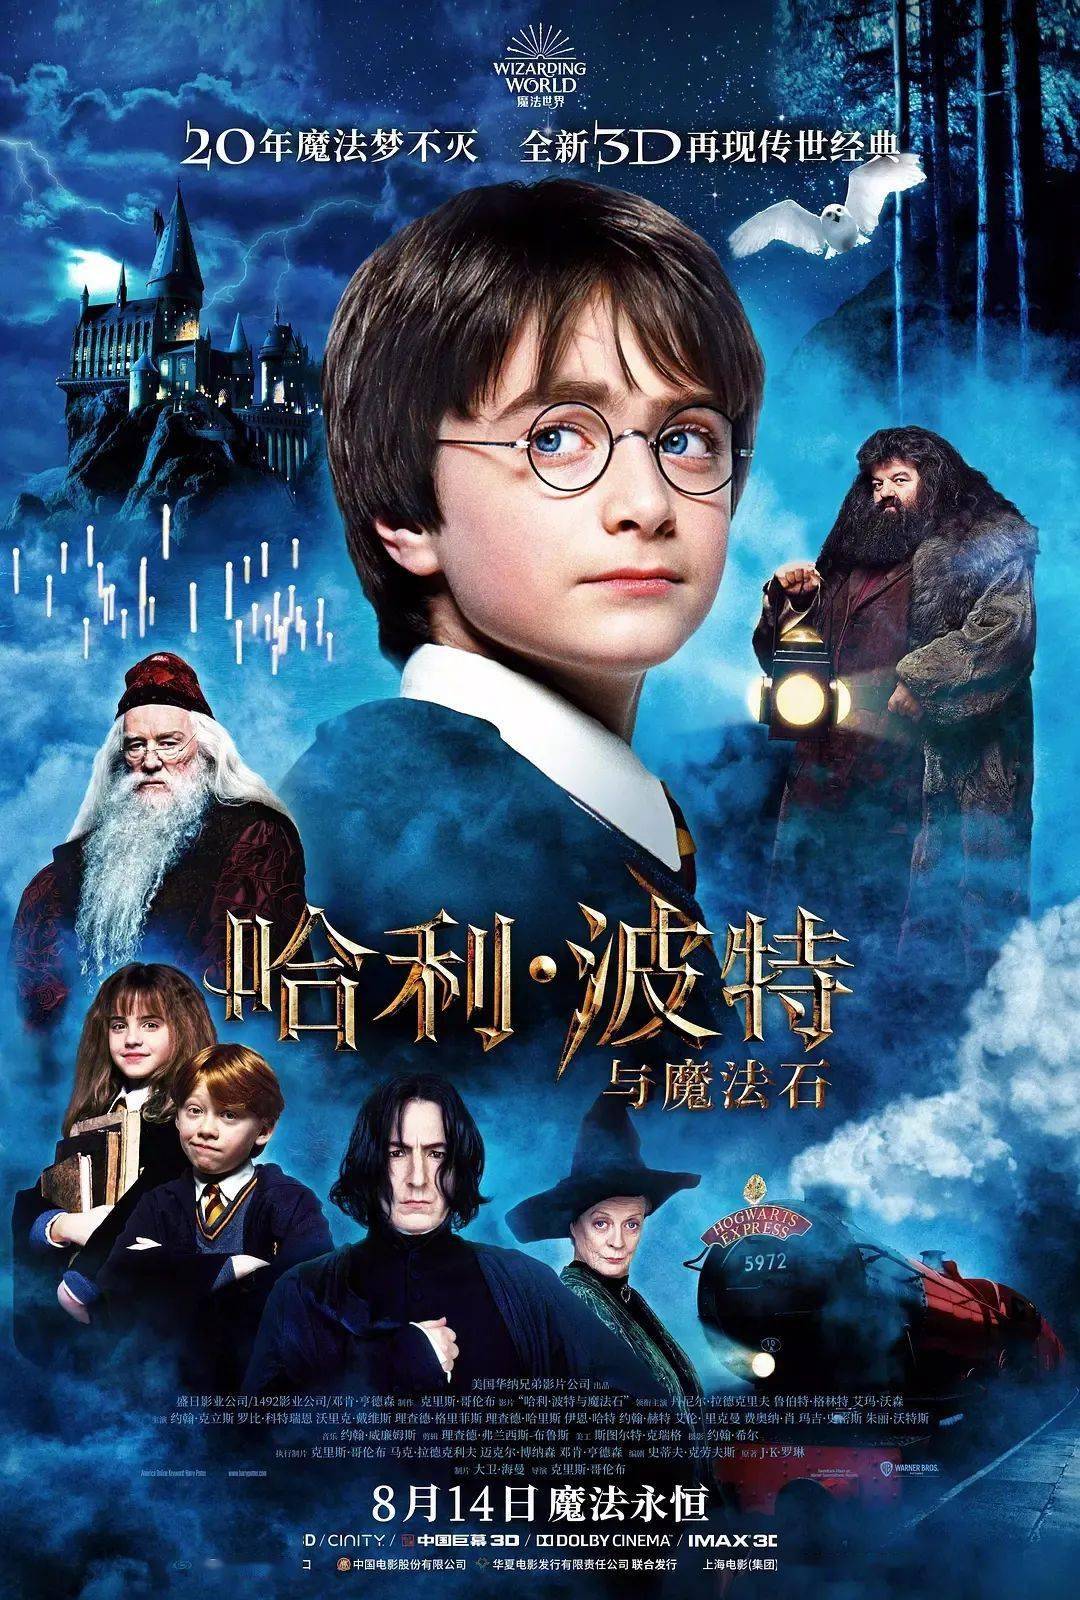 影讯丨《哈利波特与魔法石》经典重映,欢迎回到魔法的世界!